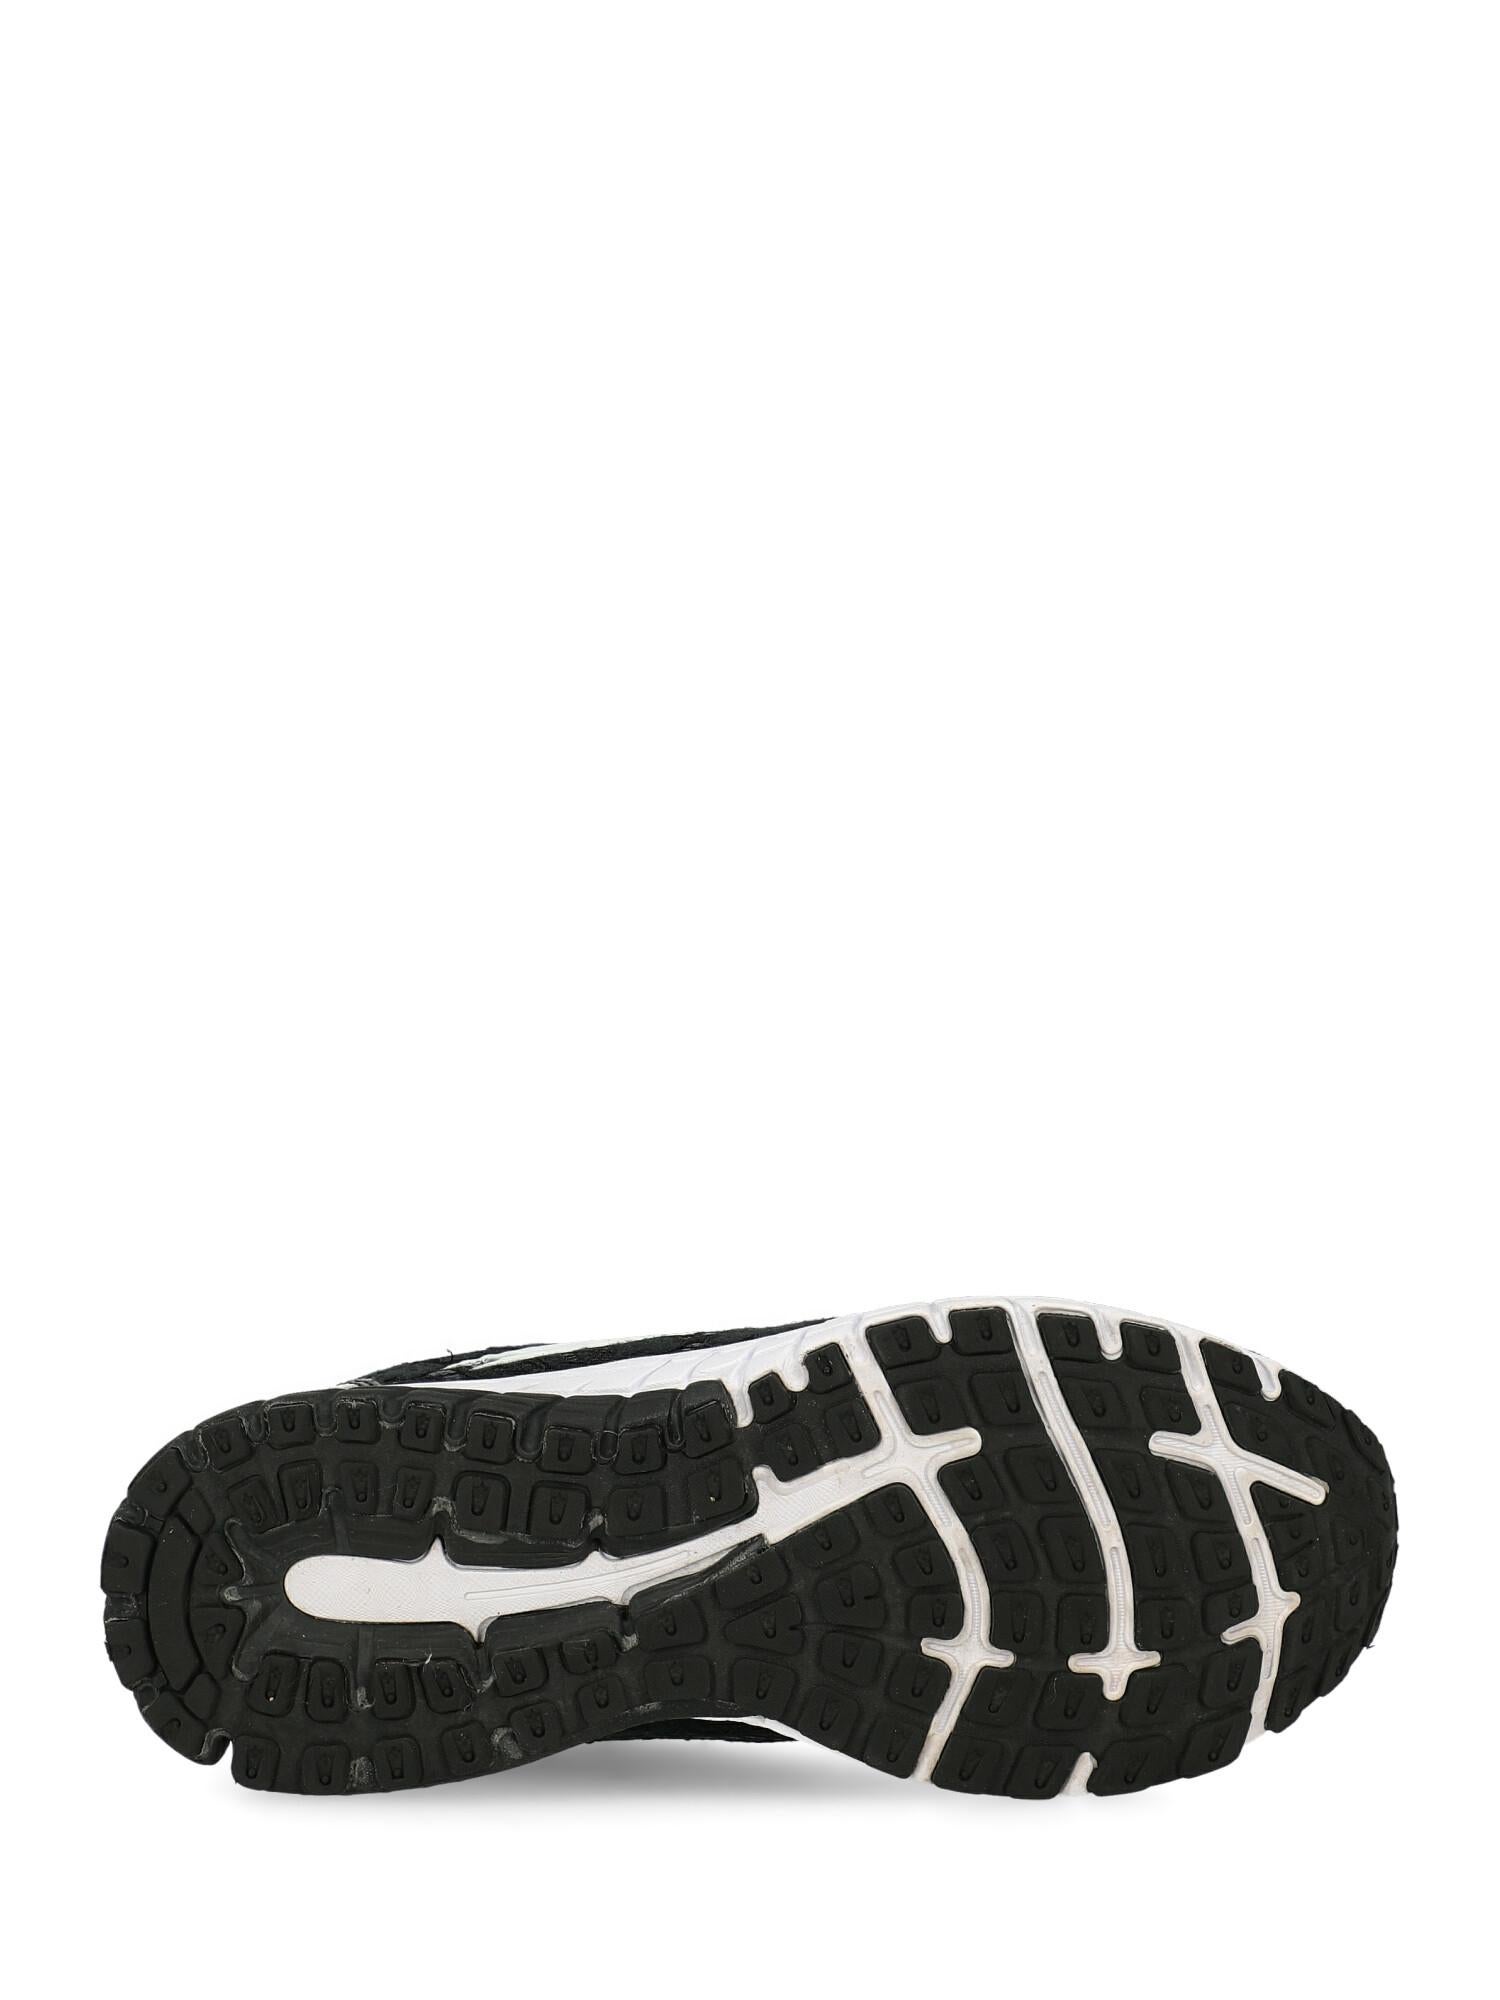 Plein Sport Woman Sneakers Black Synthetic Fibers IT 39 For Sale 1